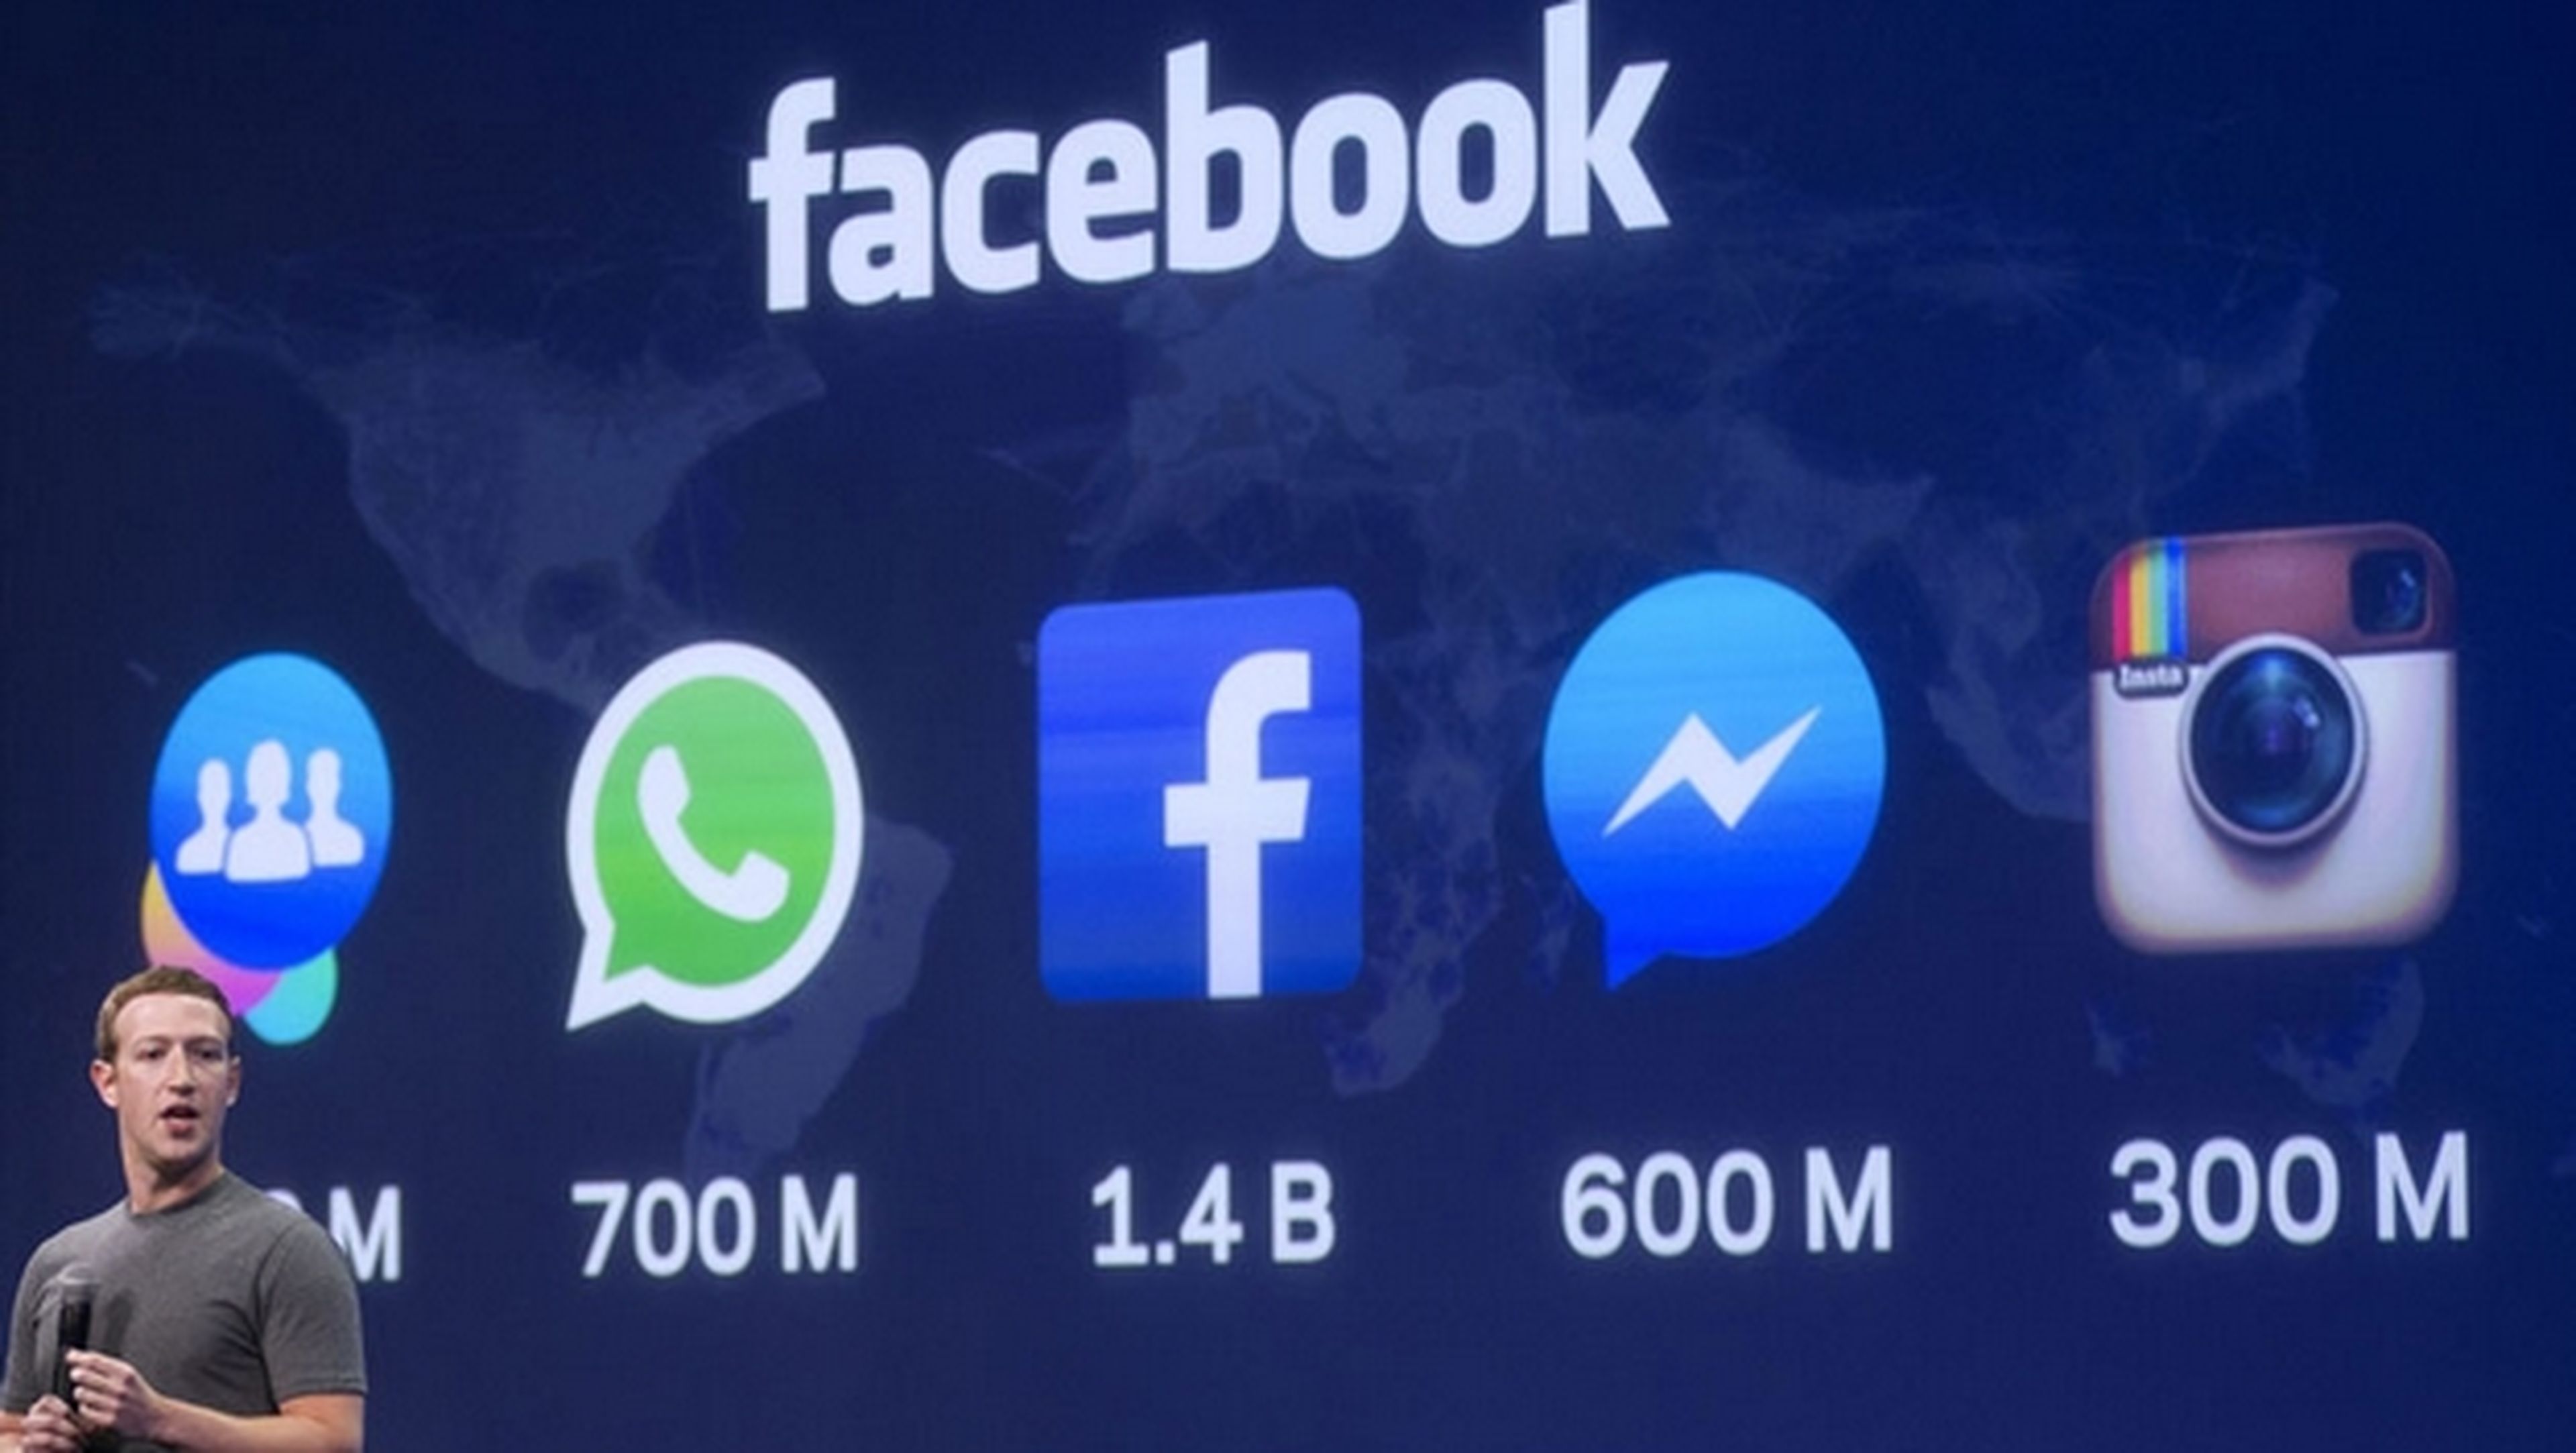 Facebook ofrecerá Internet gratis en Europa a quien lo necesite.